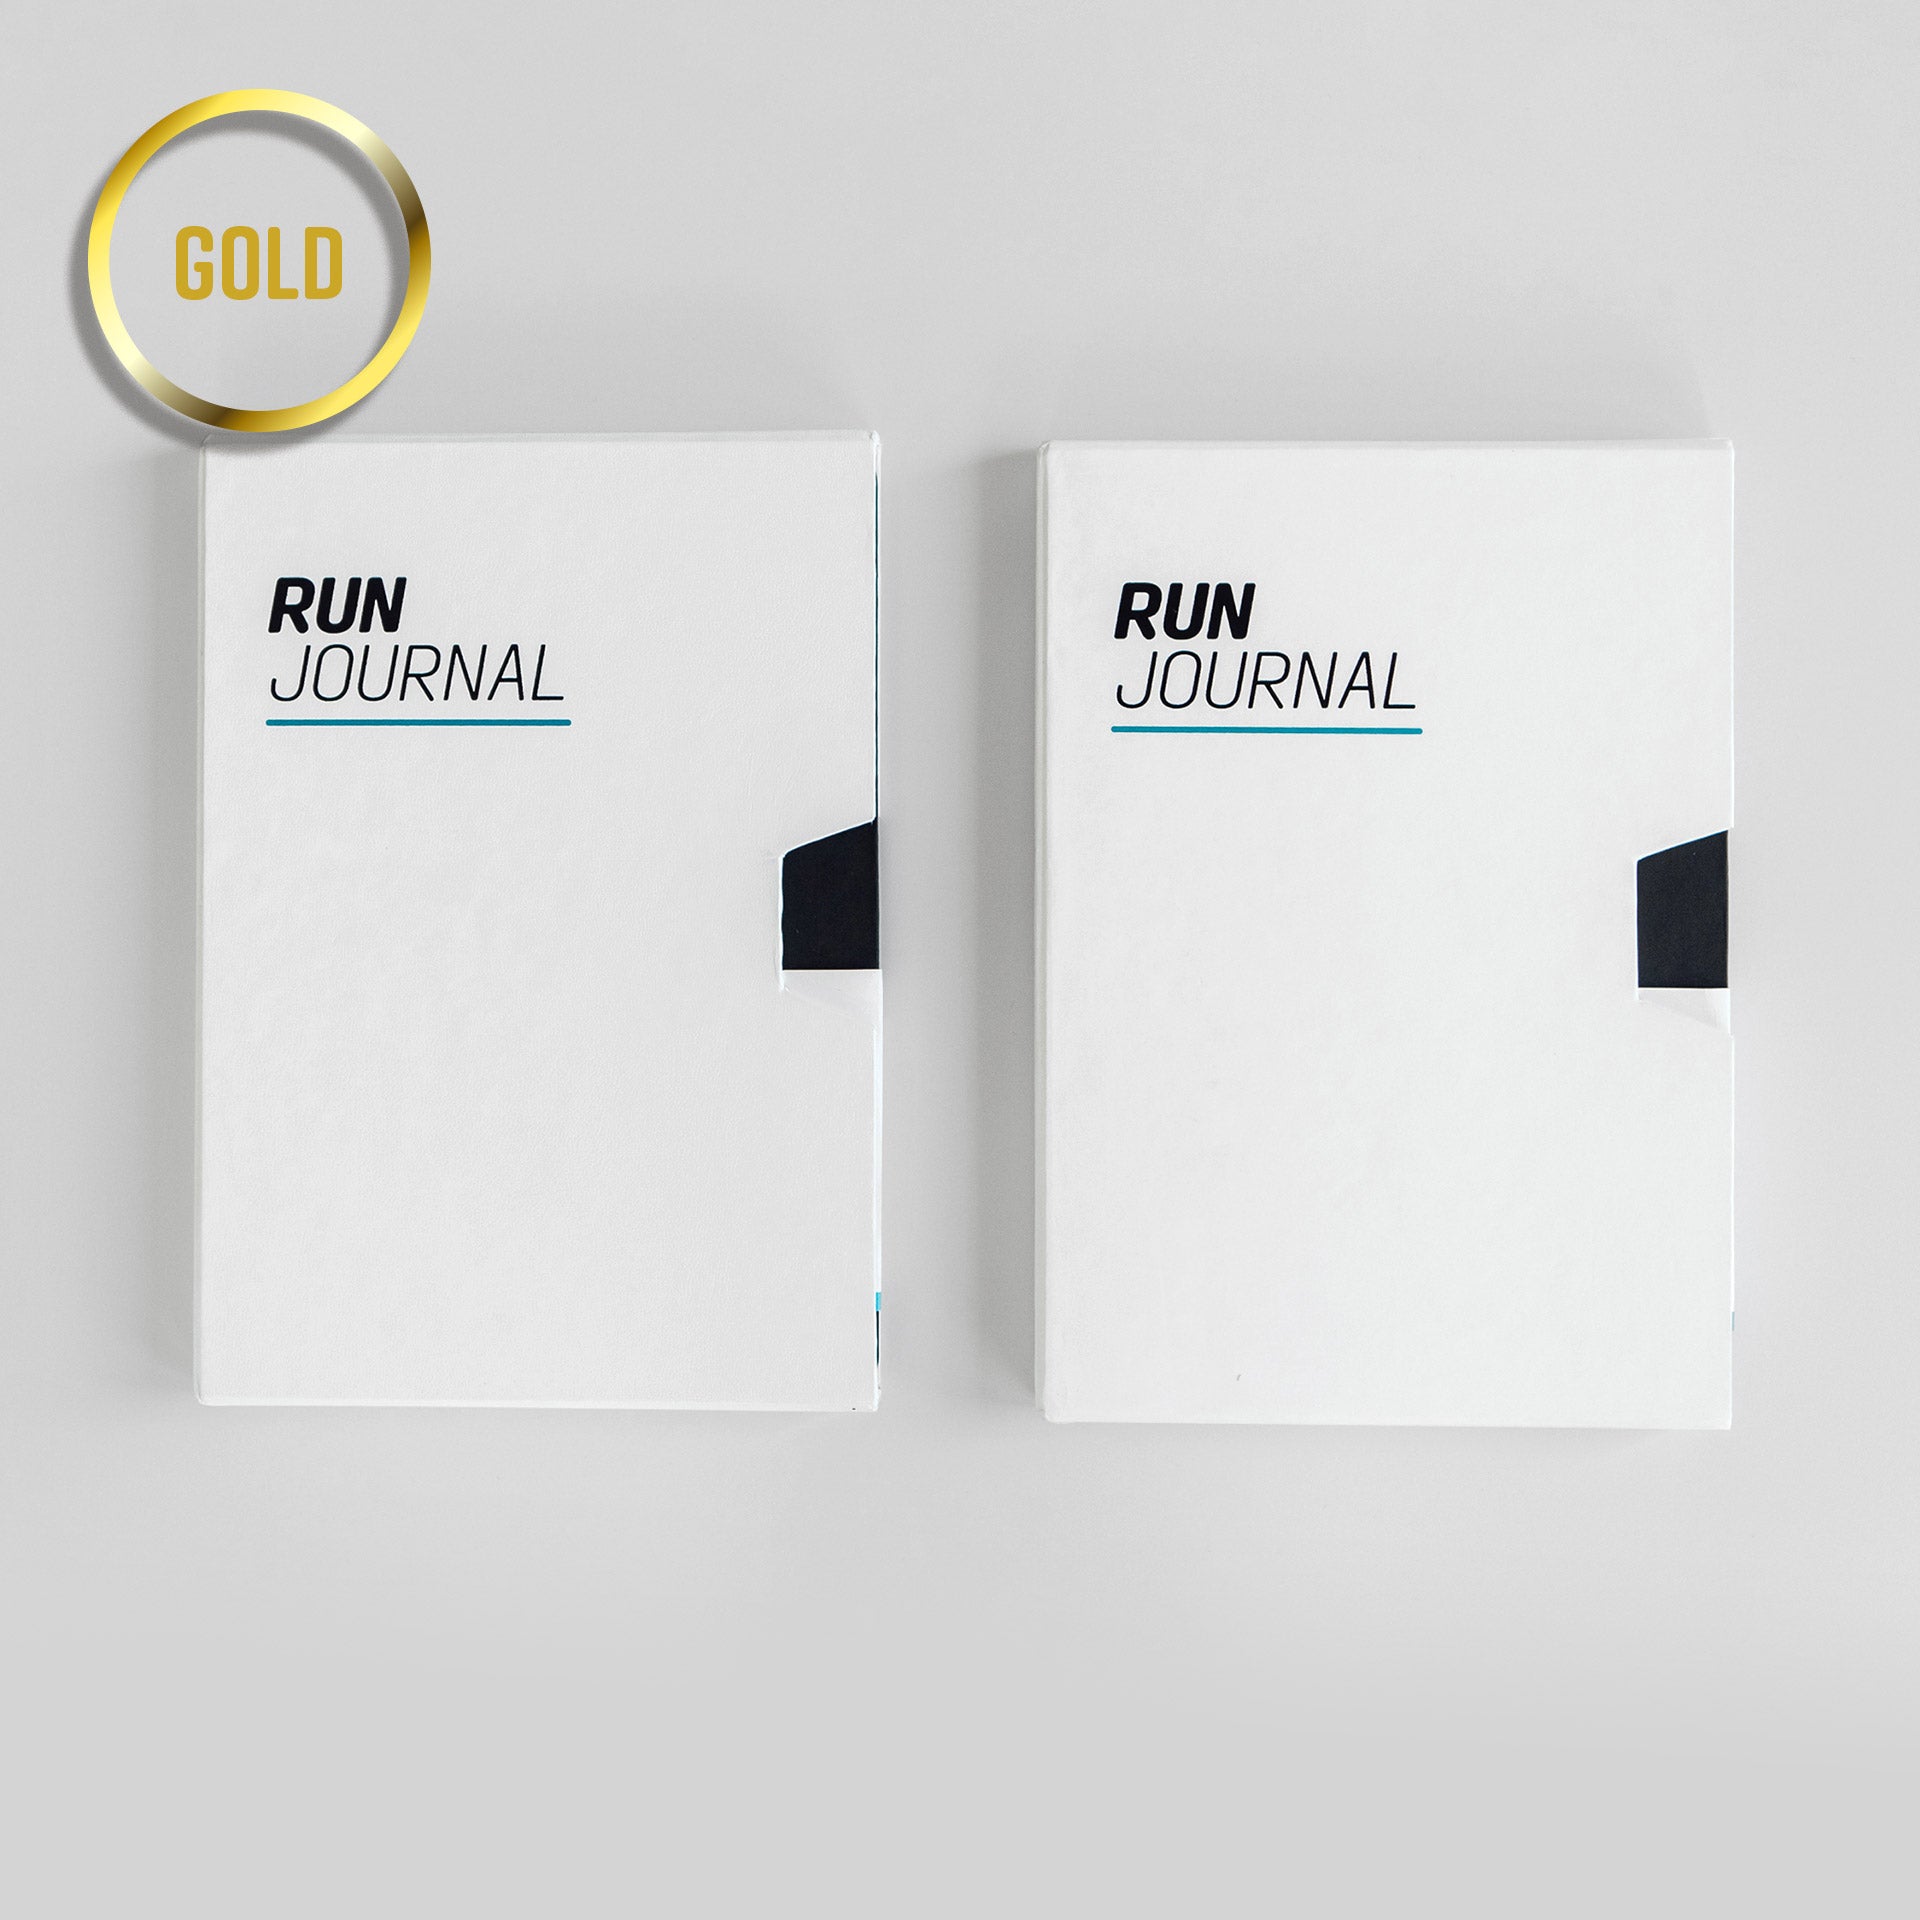 Run Journal – Gold